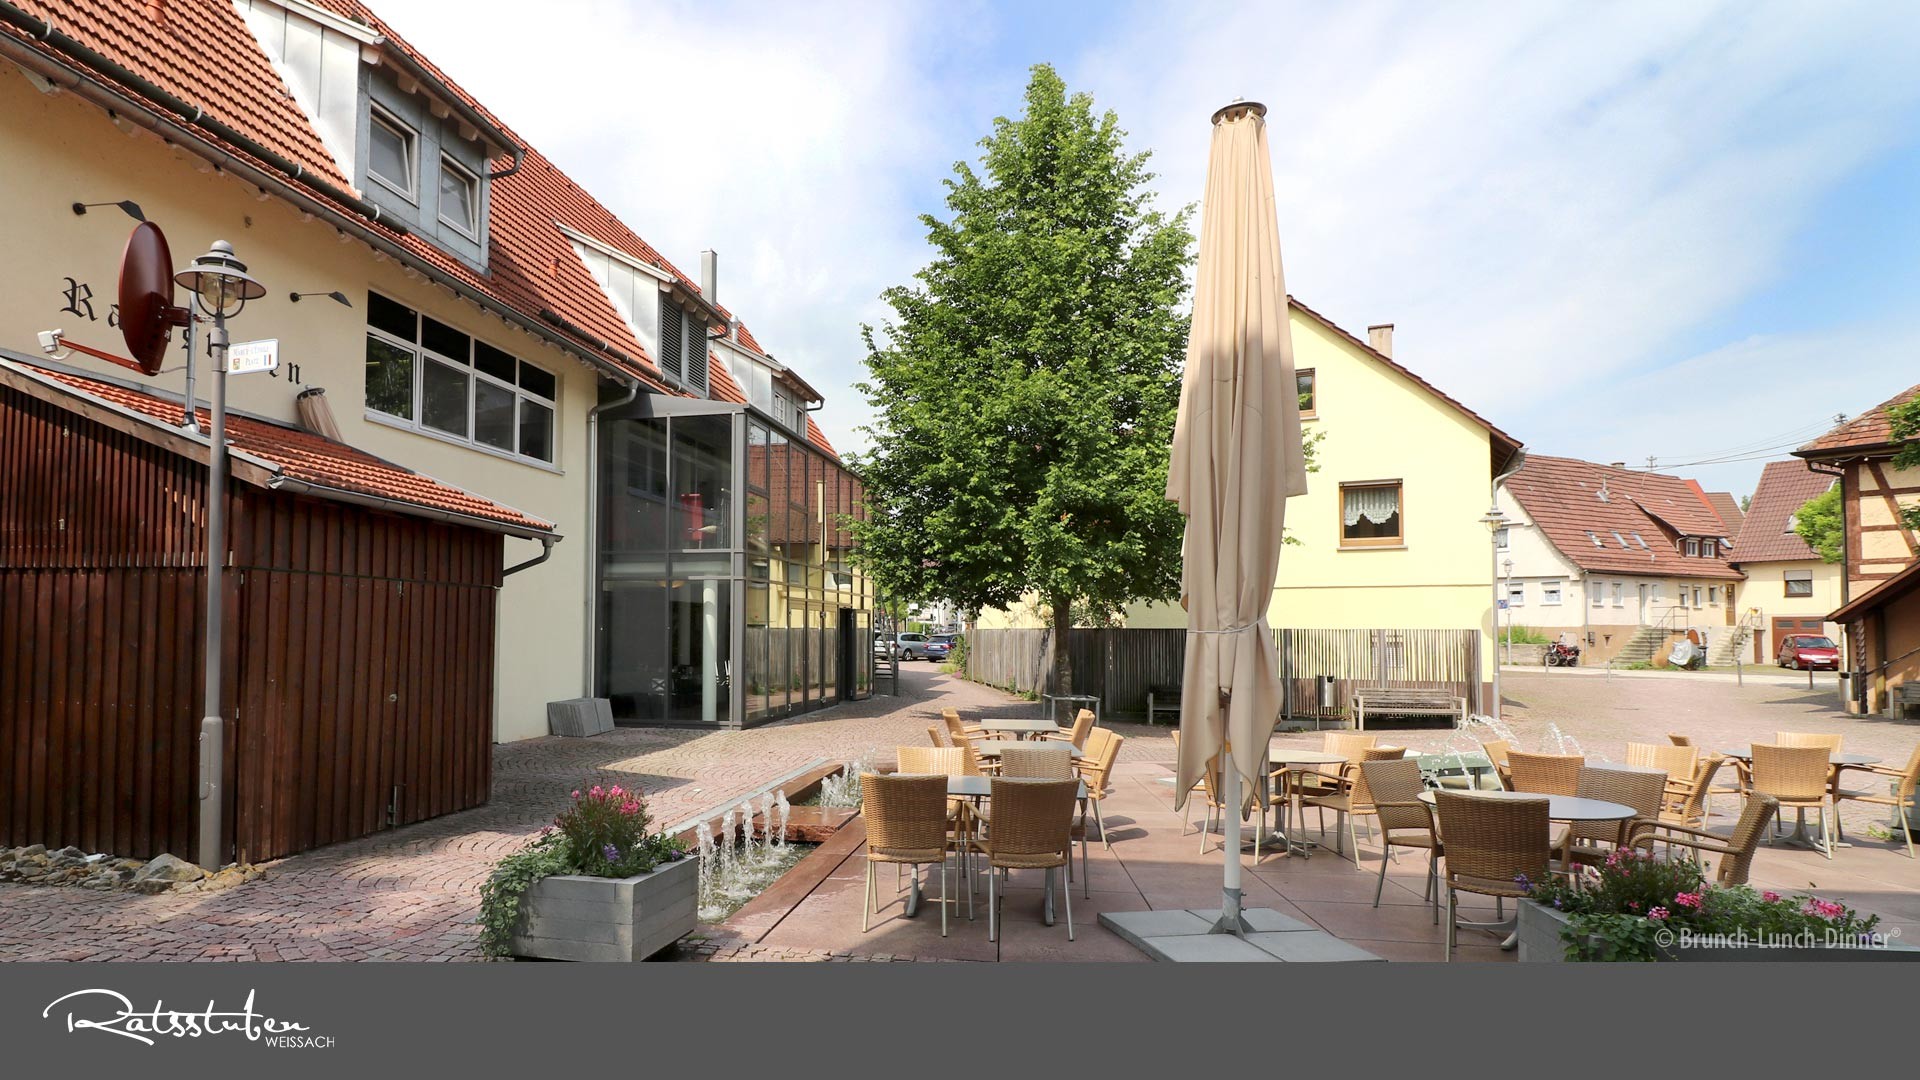 Der Geheimtipp: Ratsstuben Restaurant Weissach - das Ambiente für Ihre Firmenfeier - mit Terrasse in einem schön gestalteten Aussenbereich 